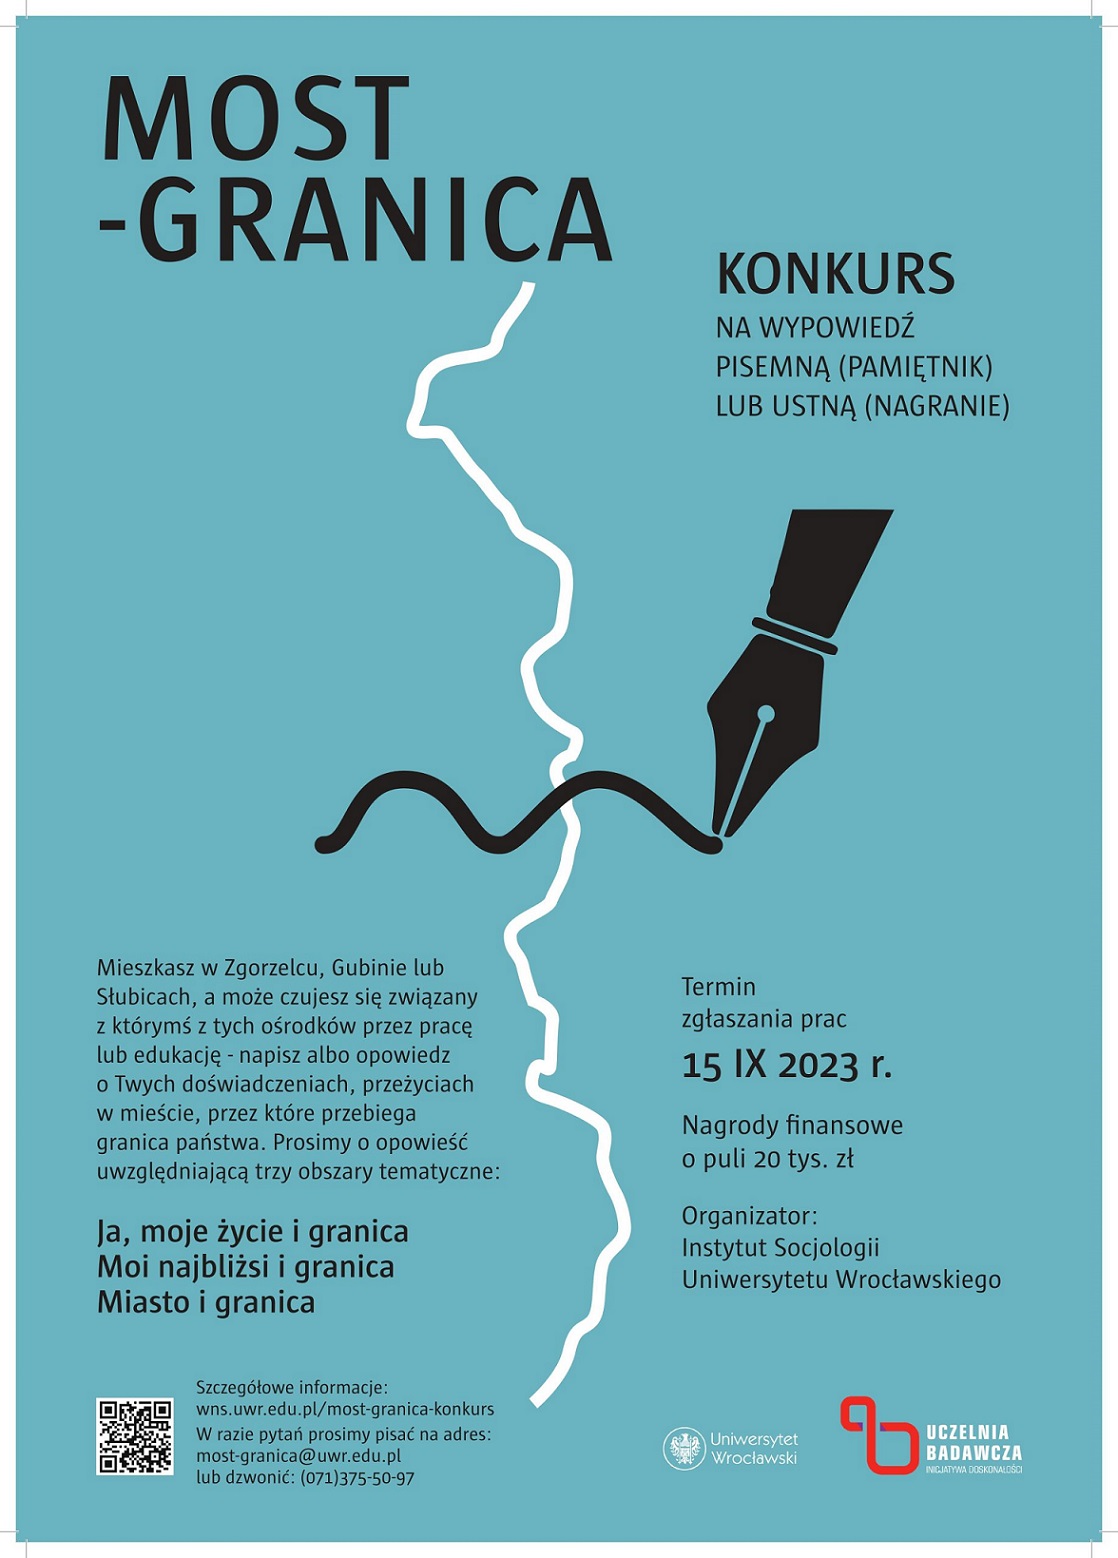 Plakat promujący konkurs na pamiętnik „Most-granica”.